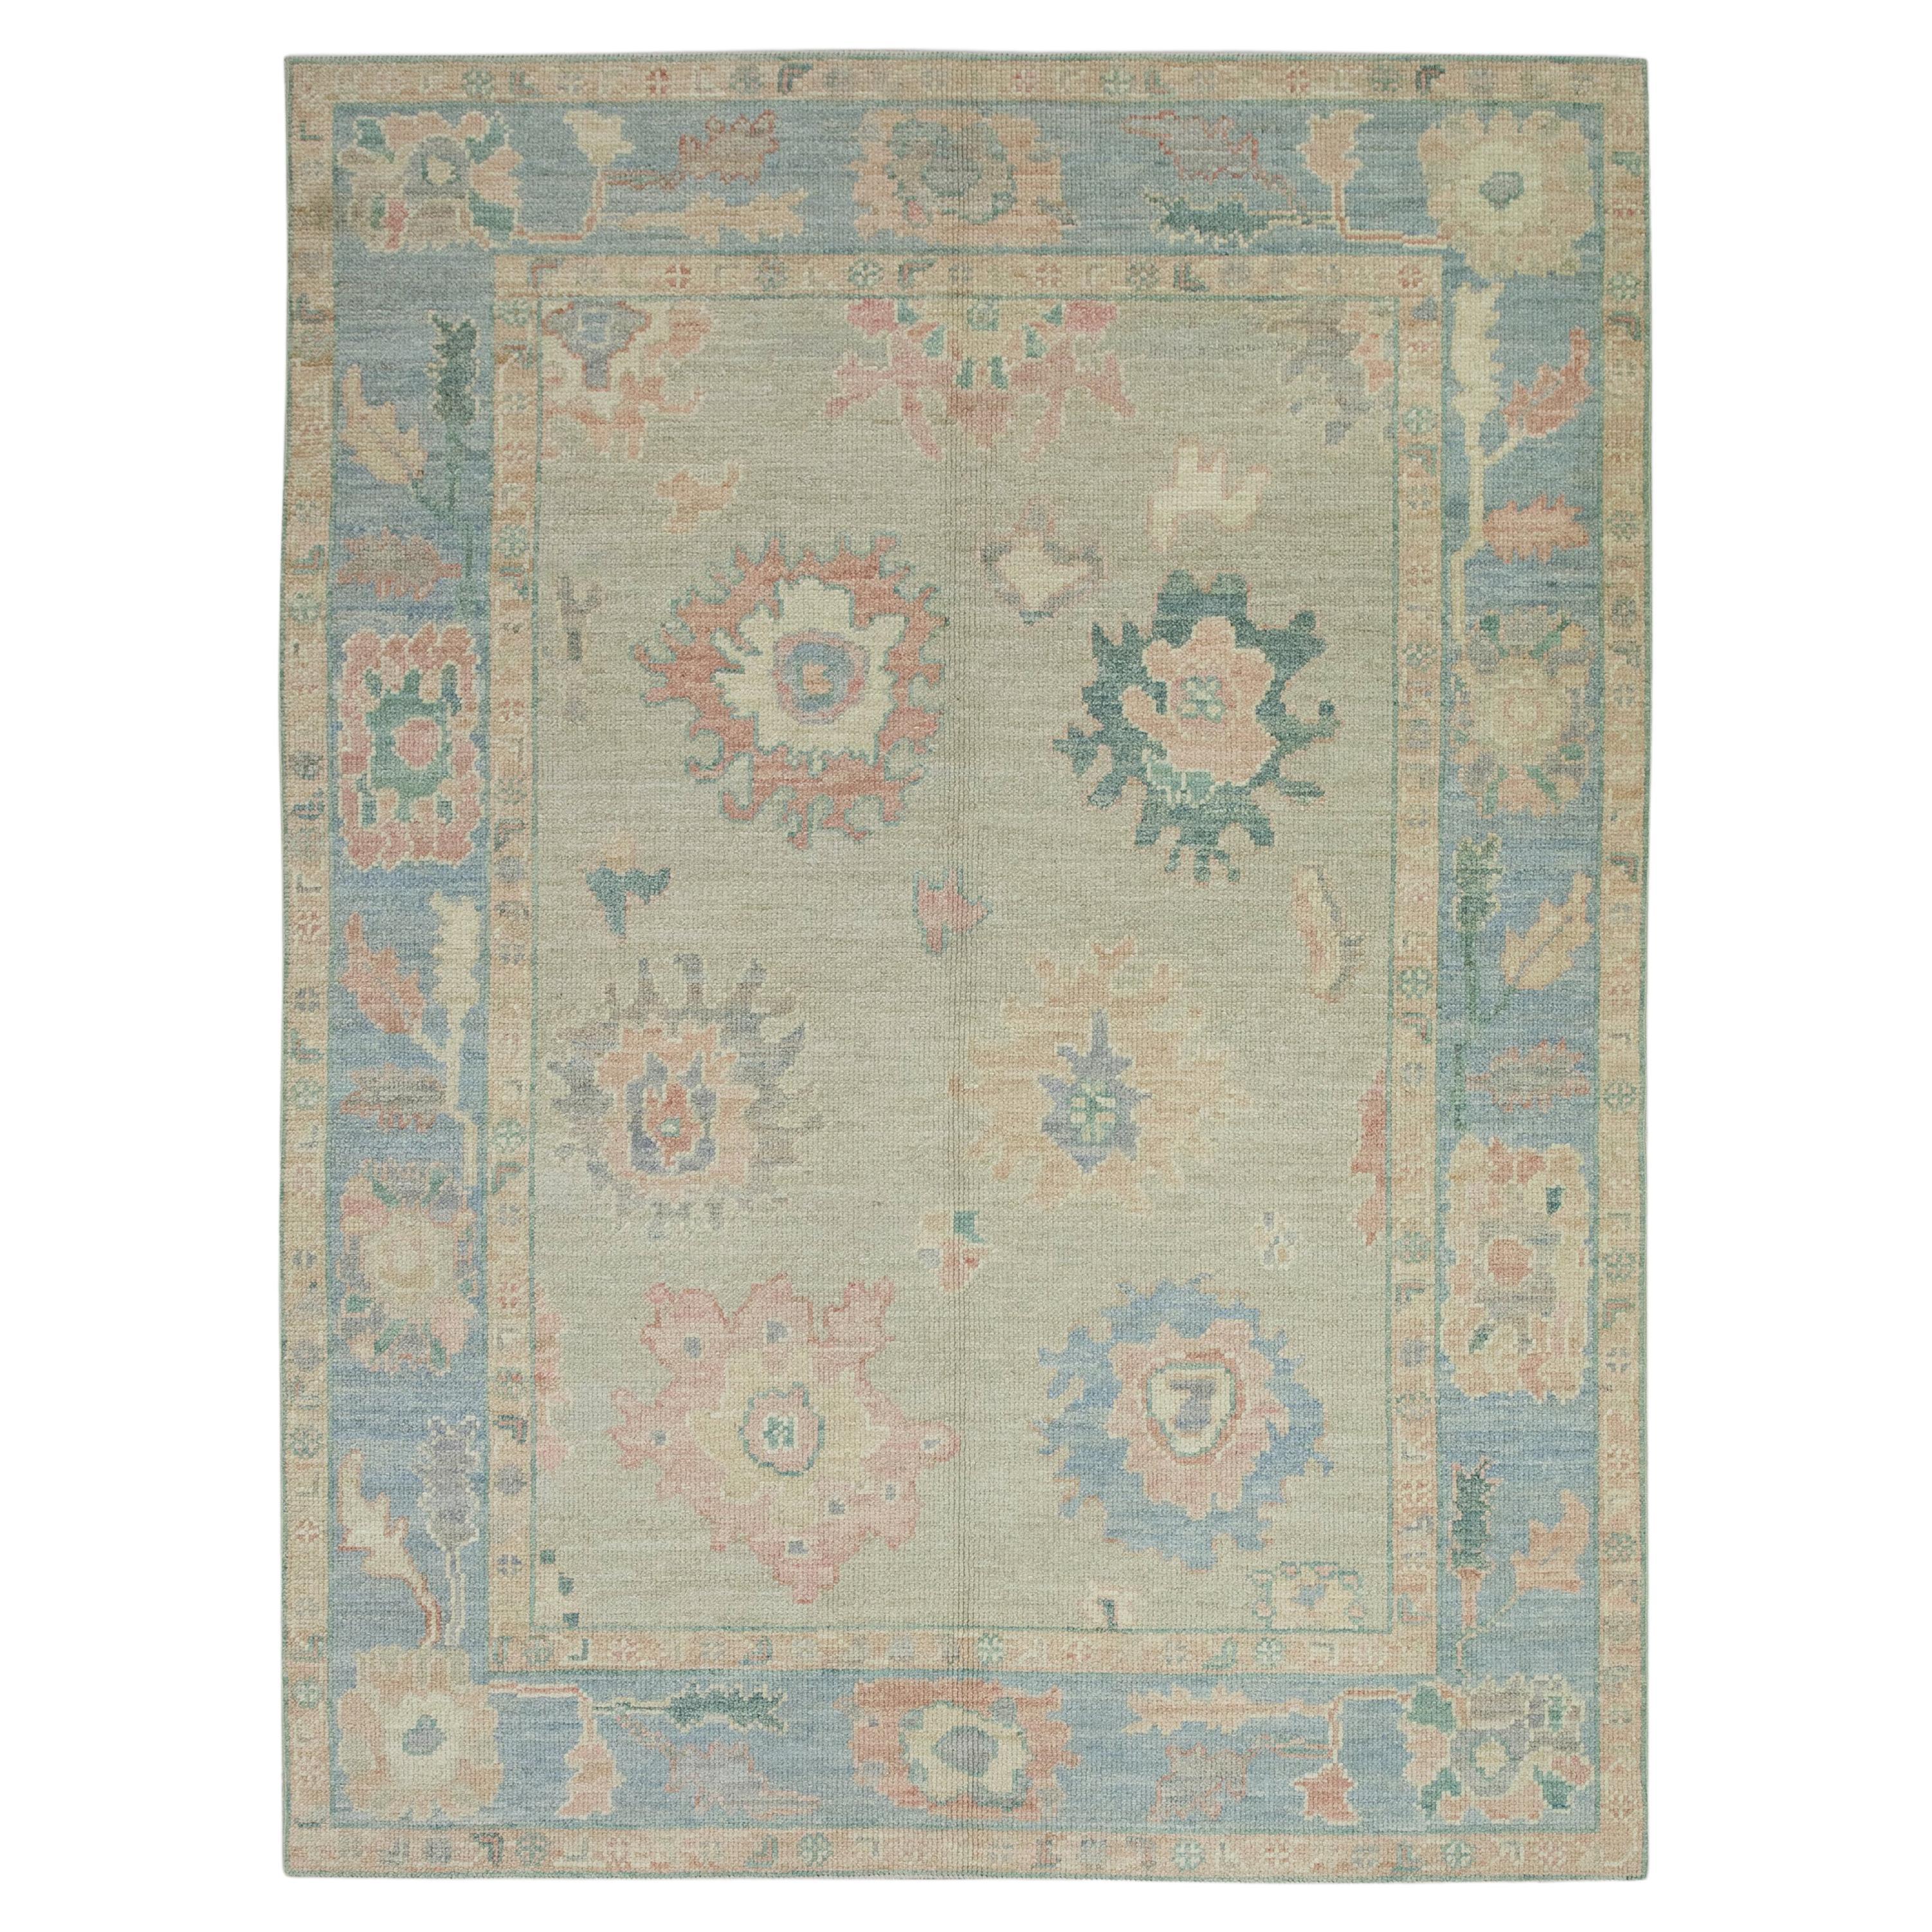 Tapis turc Oushak en laine tissée à la main à motifs floraux bleus et roses 5' x 6'11"